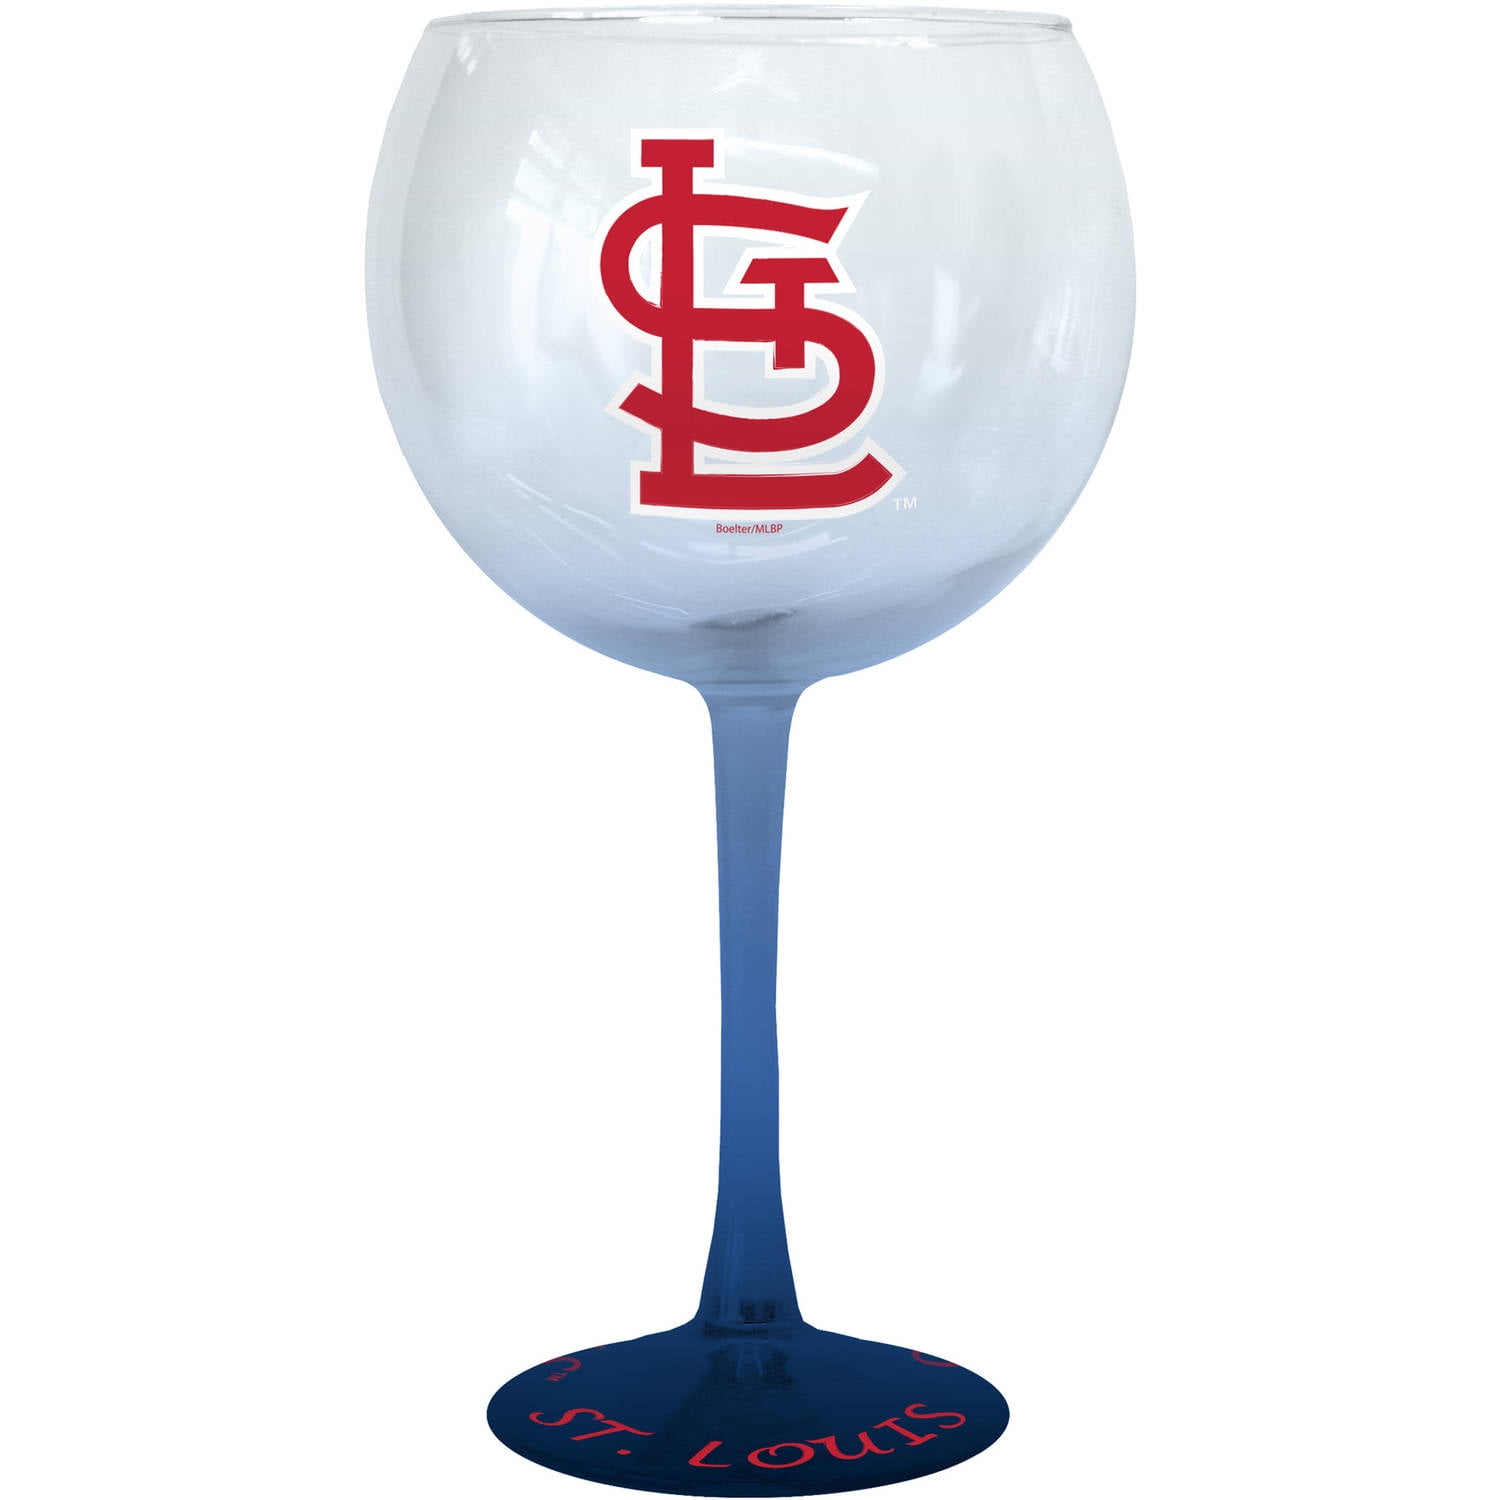 St. Louis Cardinals Team Colors Wine Tumbler Two-Piece Set